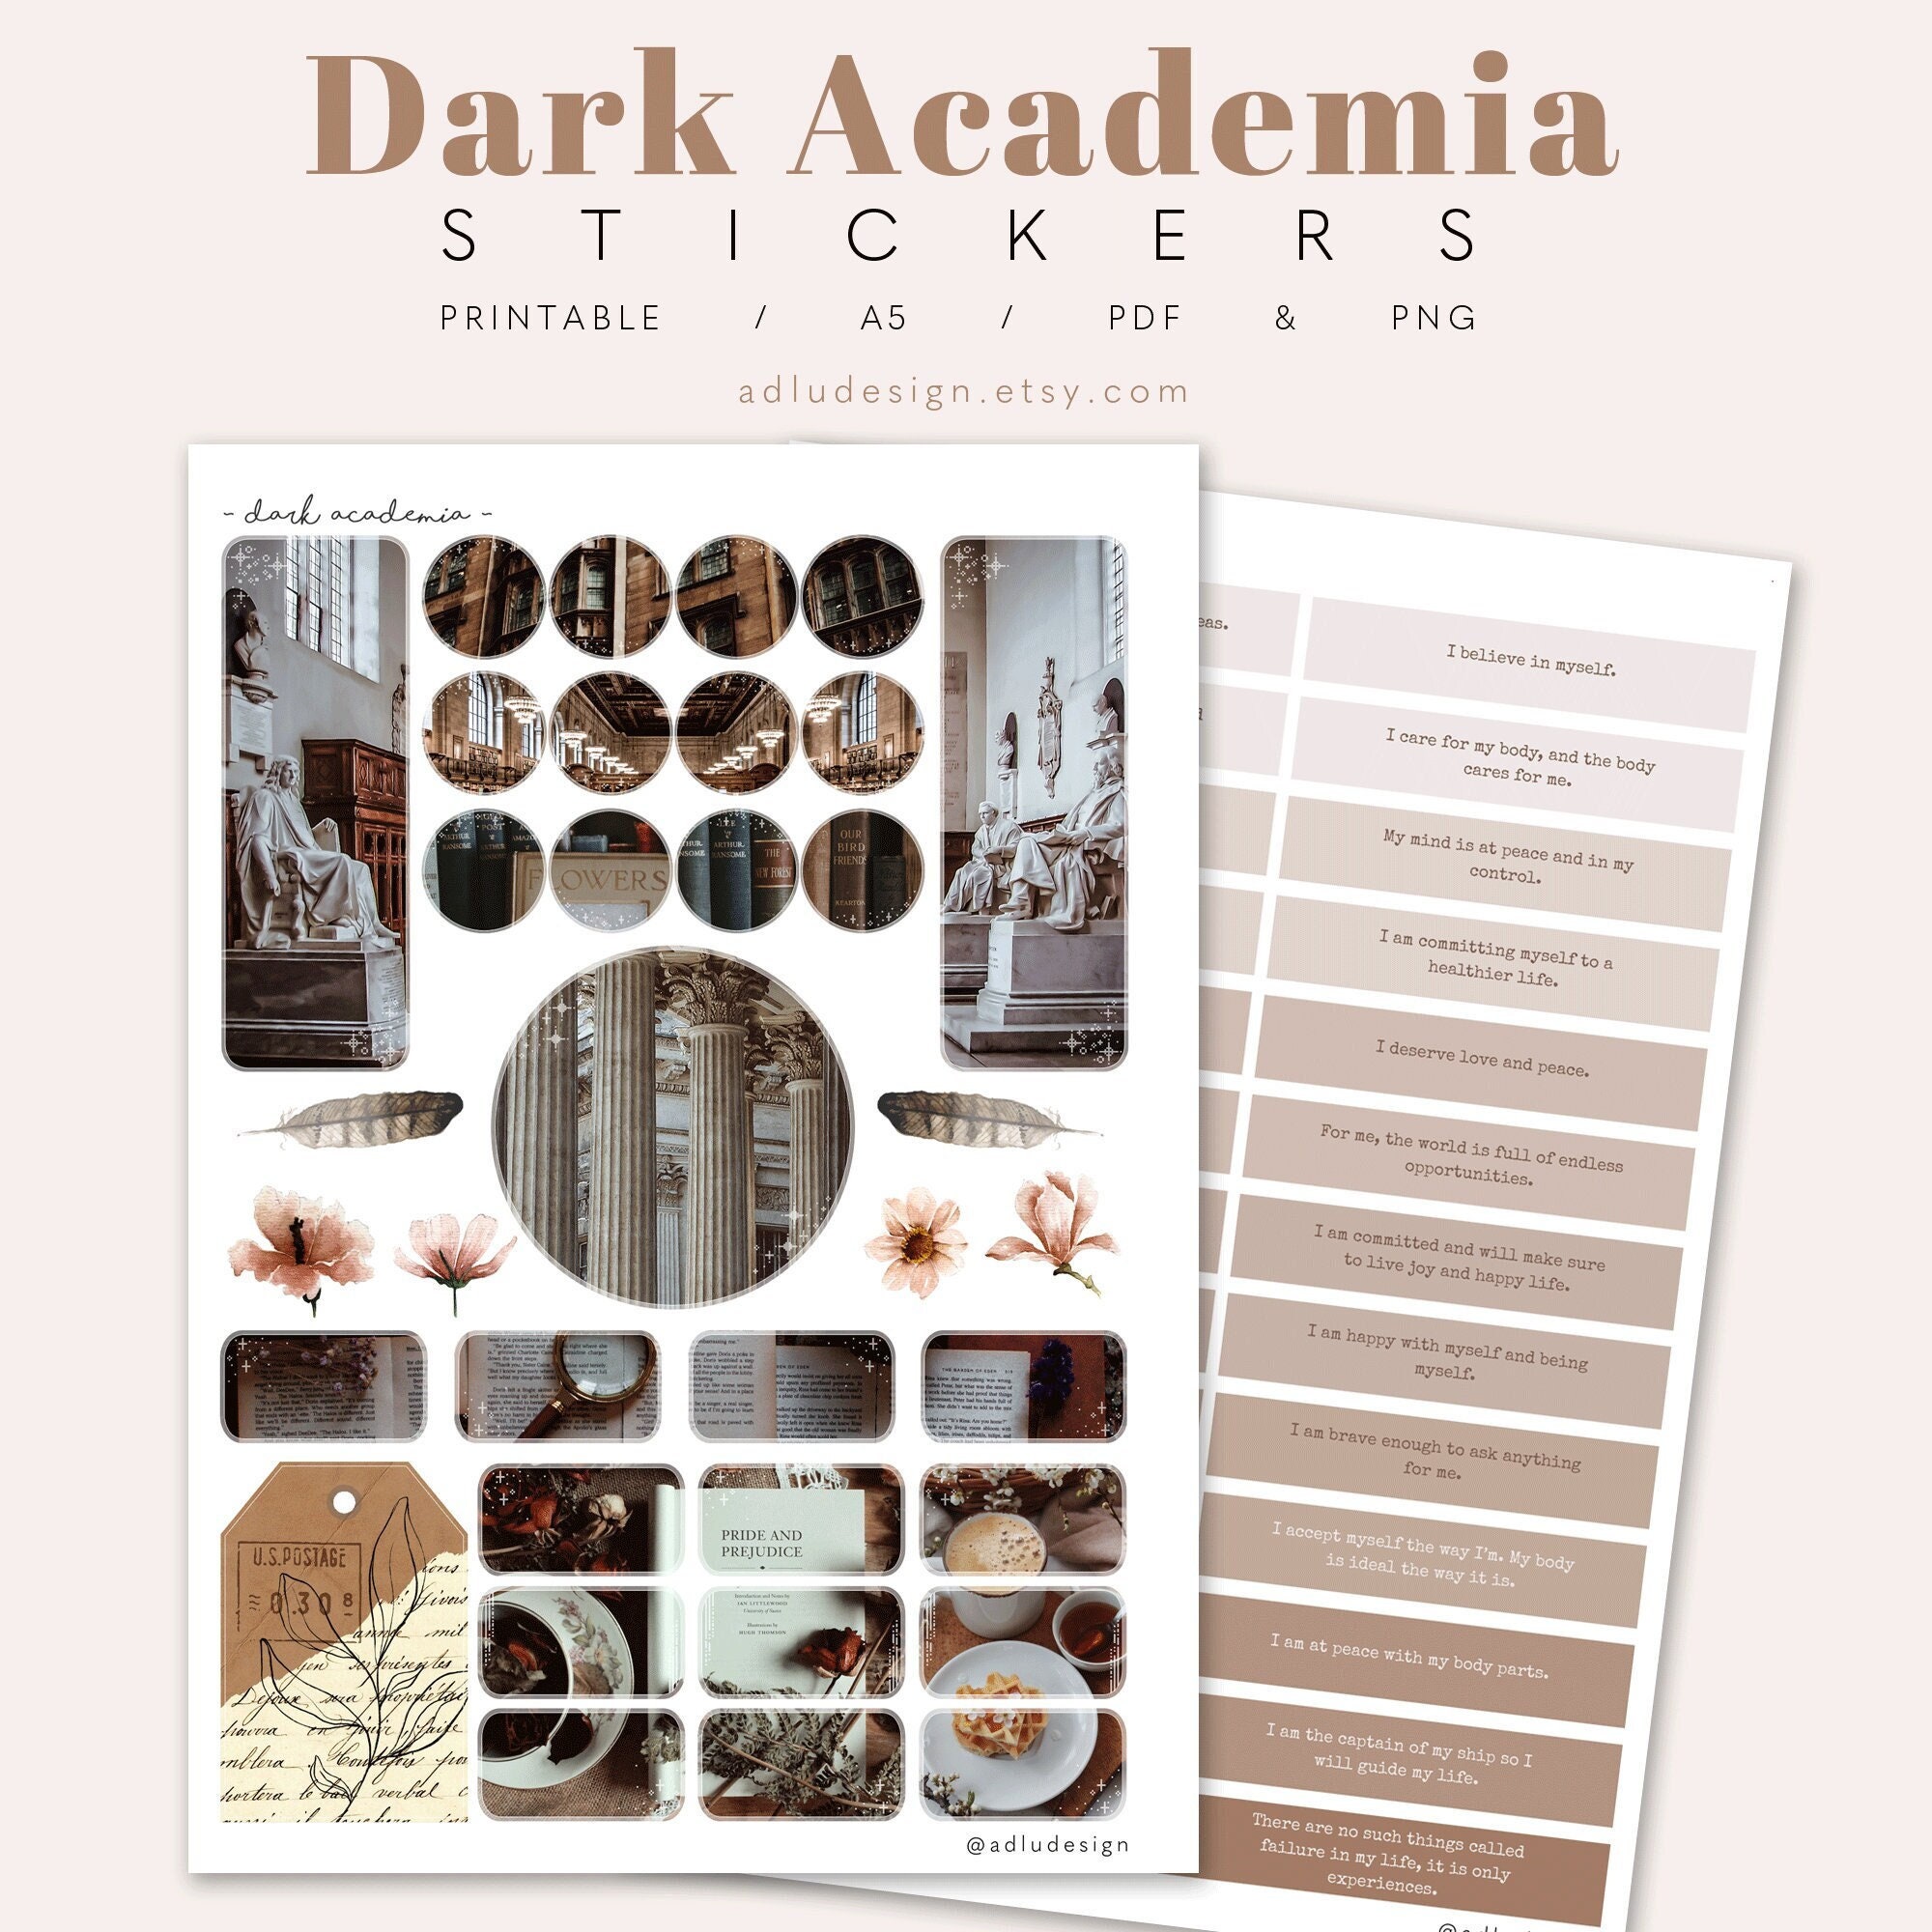 Dark Academia Sticker Storage Book Sticker Collection, Release